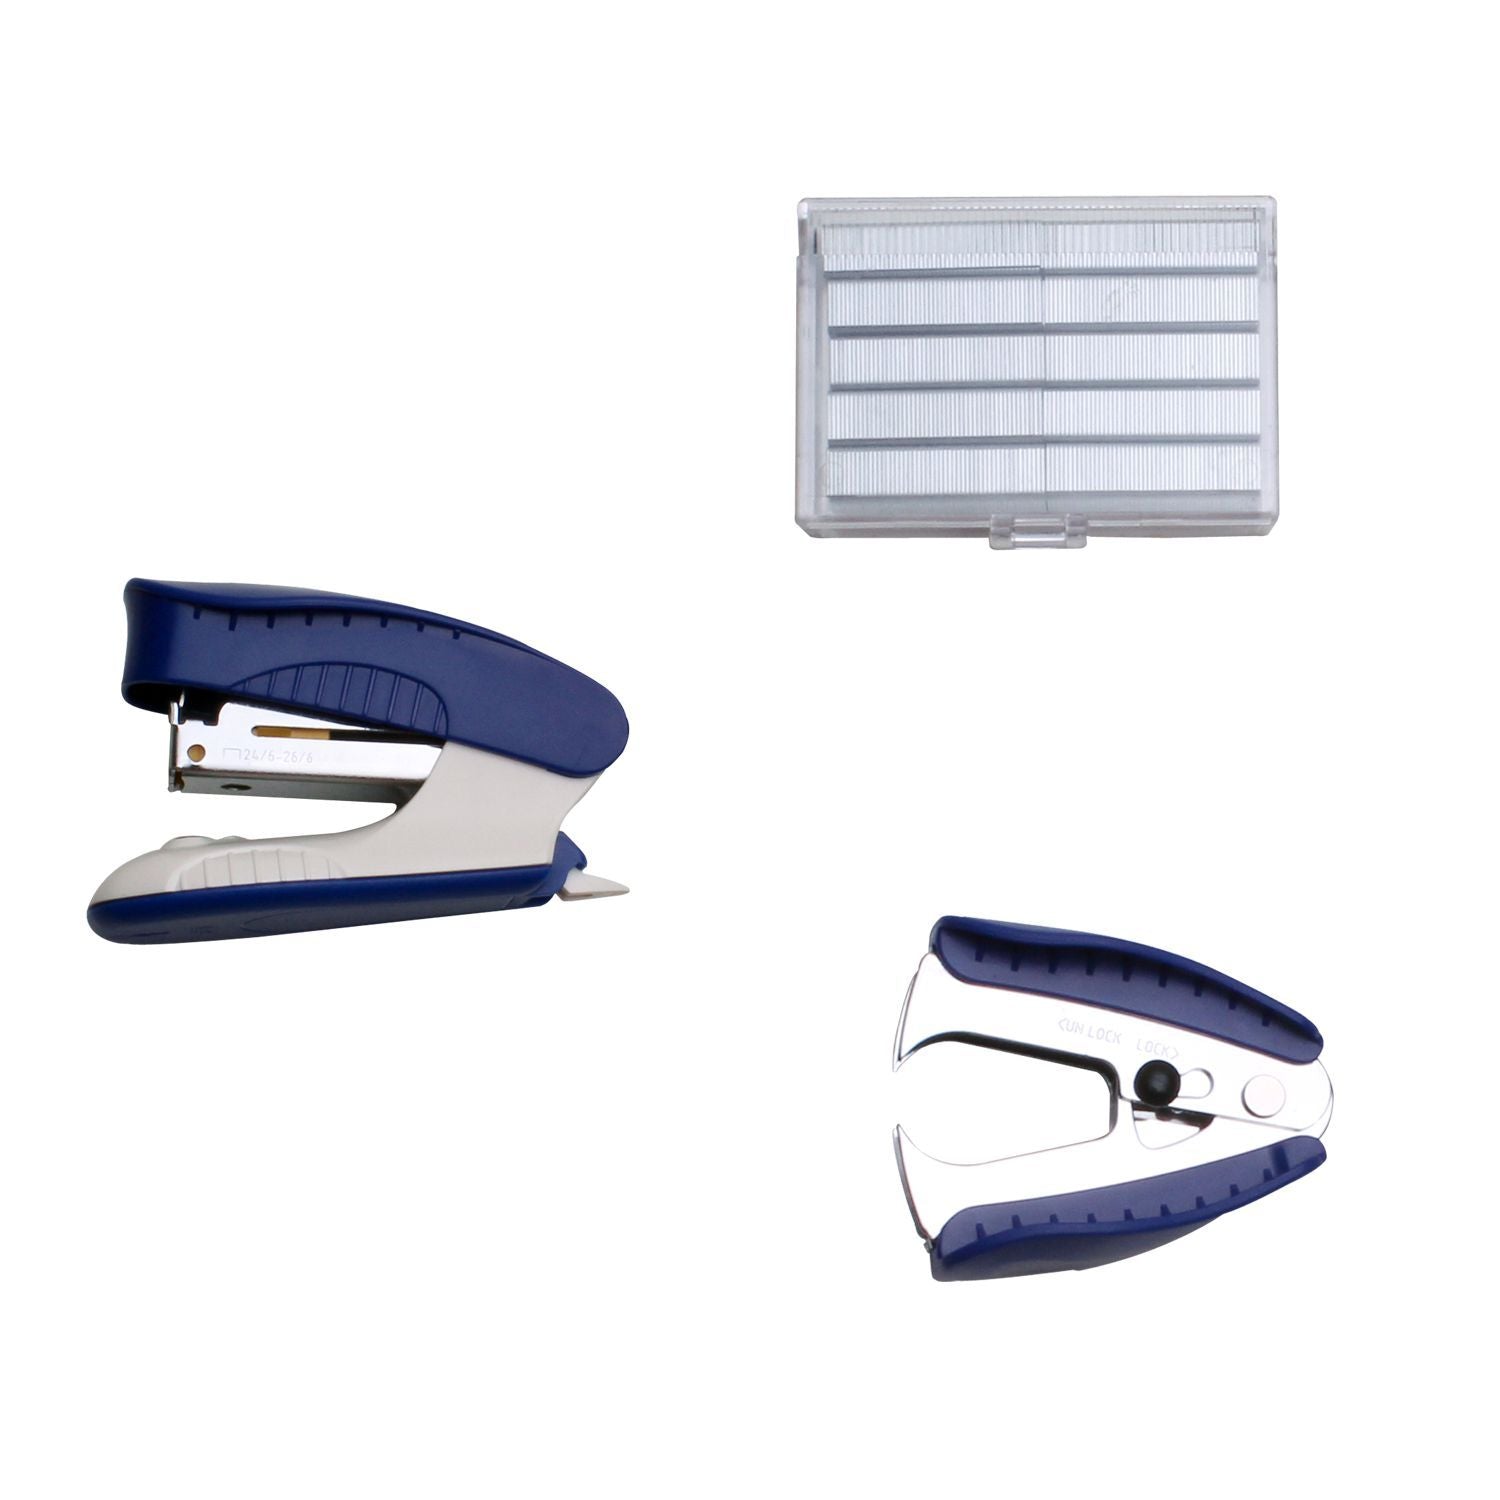 stapler kit